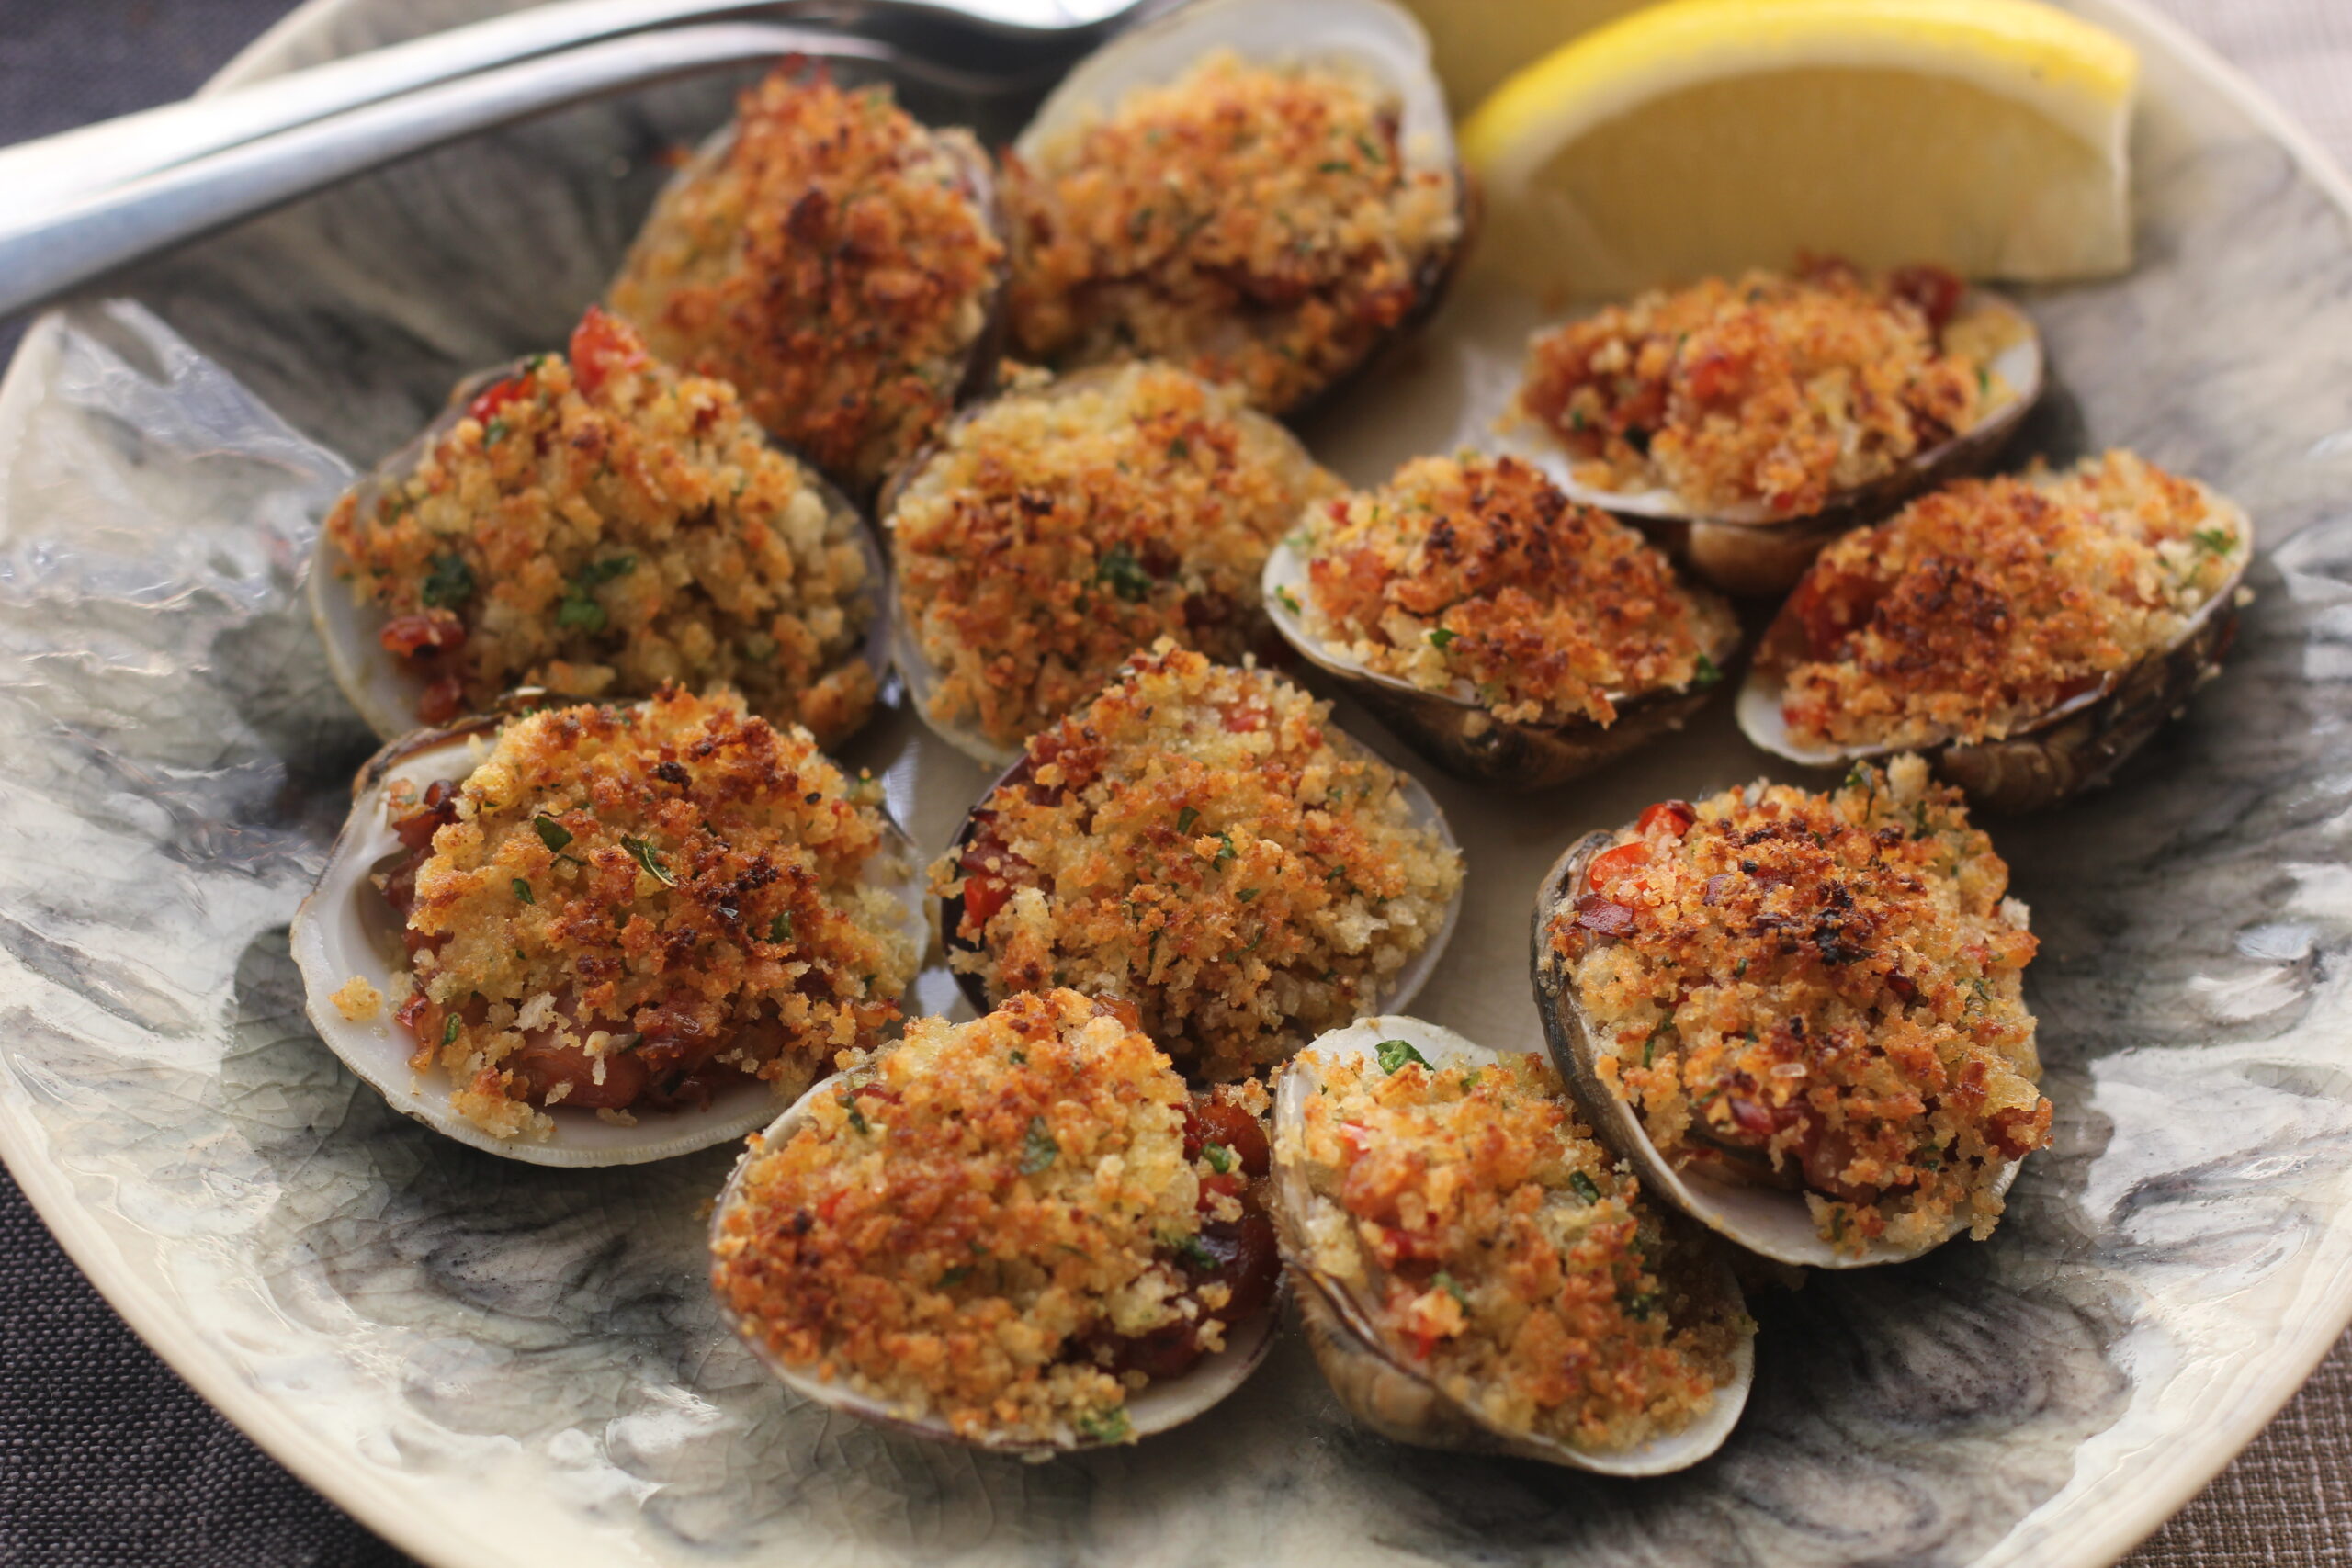 clams casino recipe